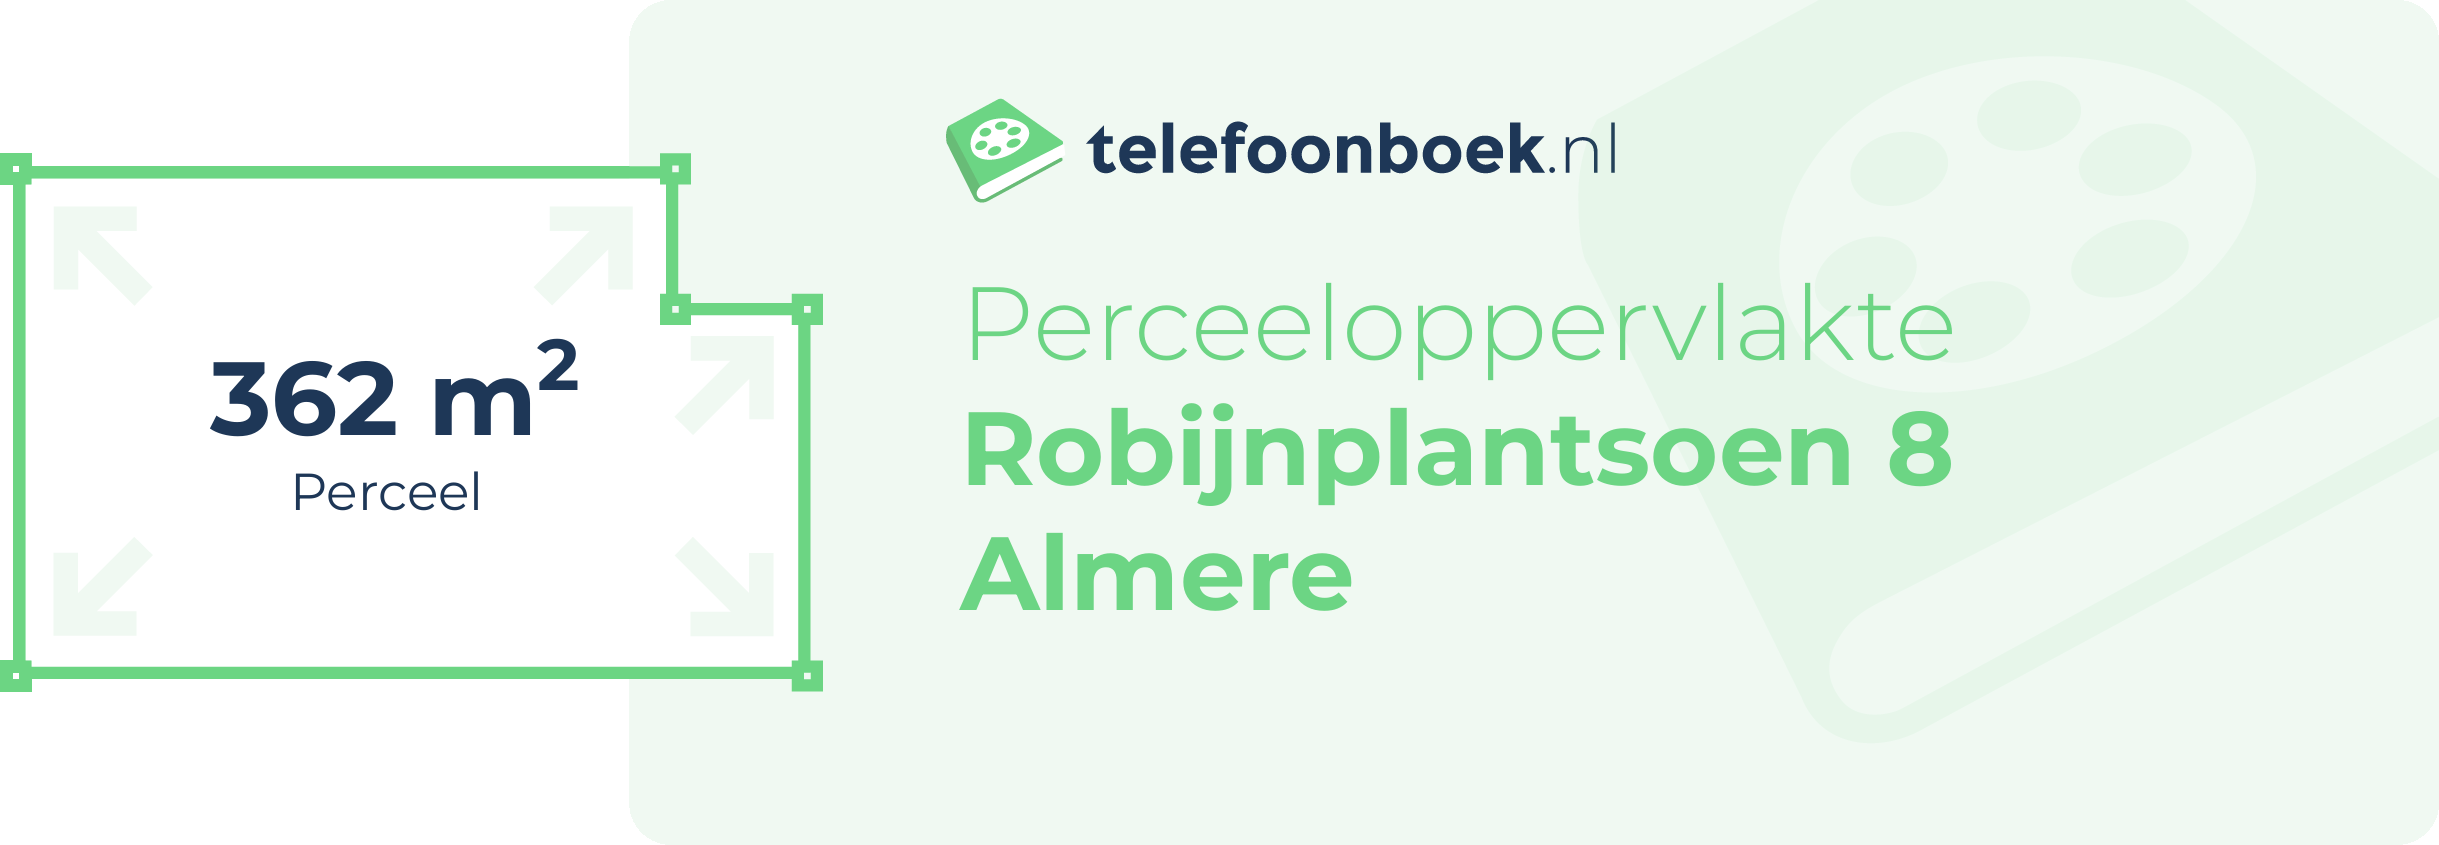 Perceeloppervlakte Robijnplantsoen 8 Almere